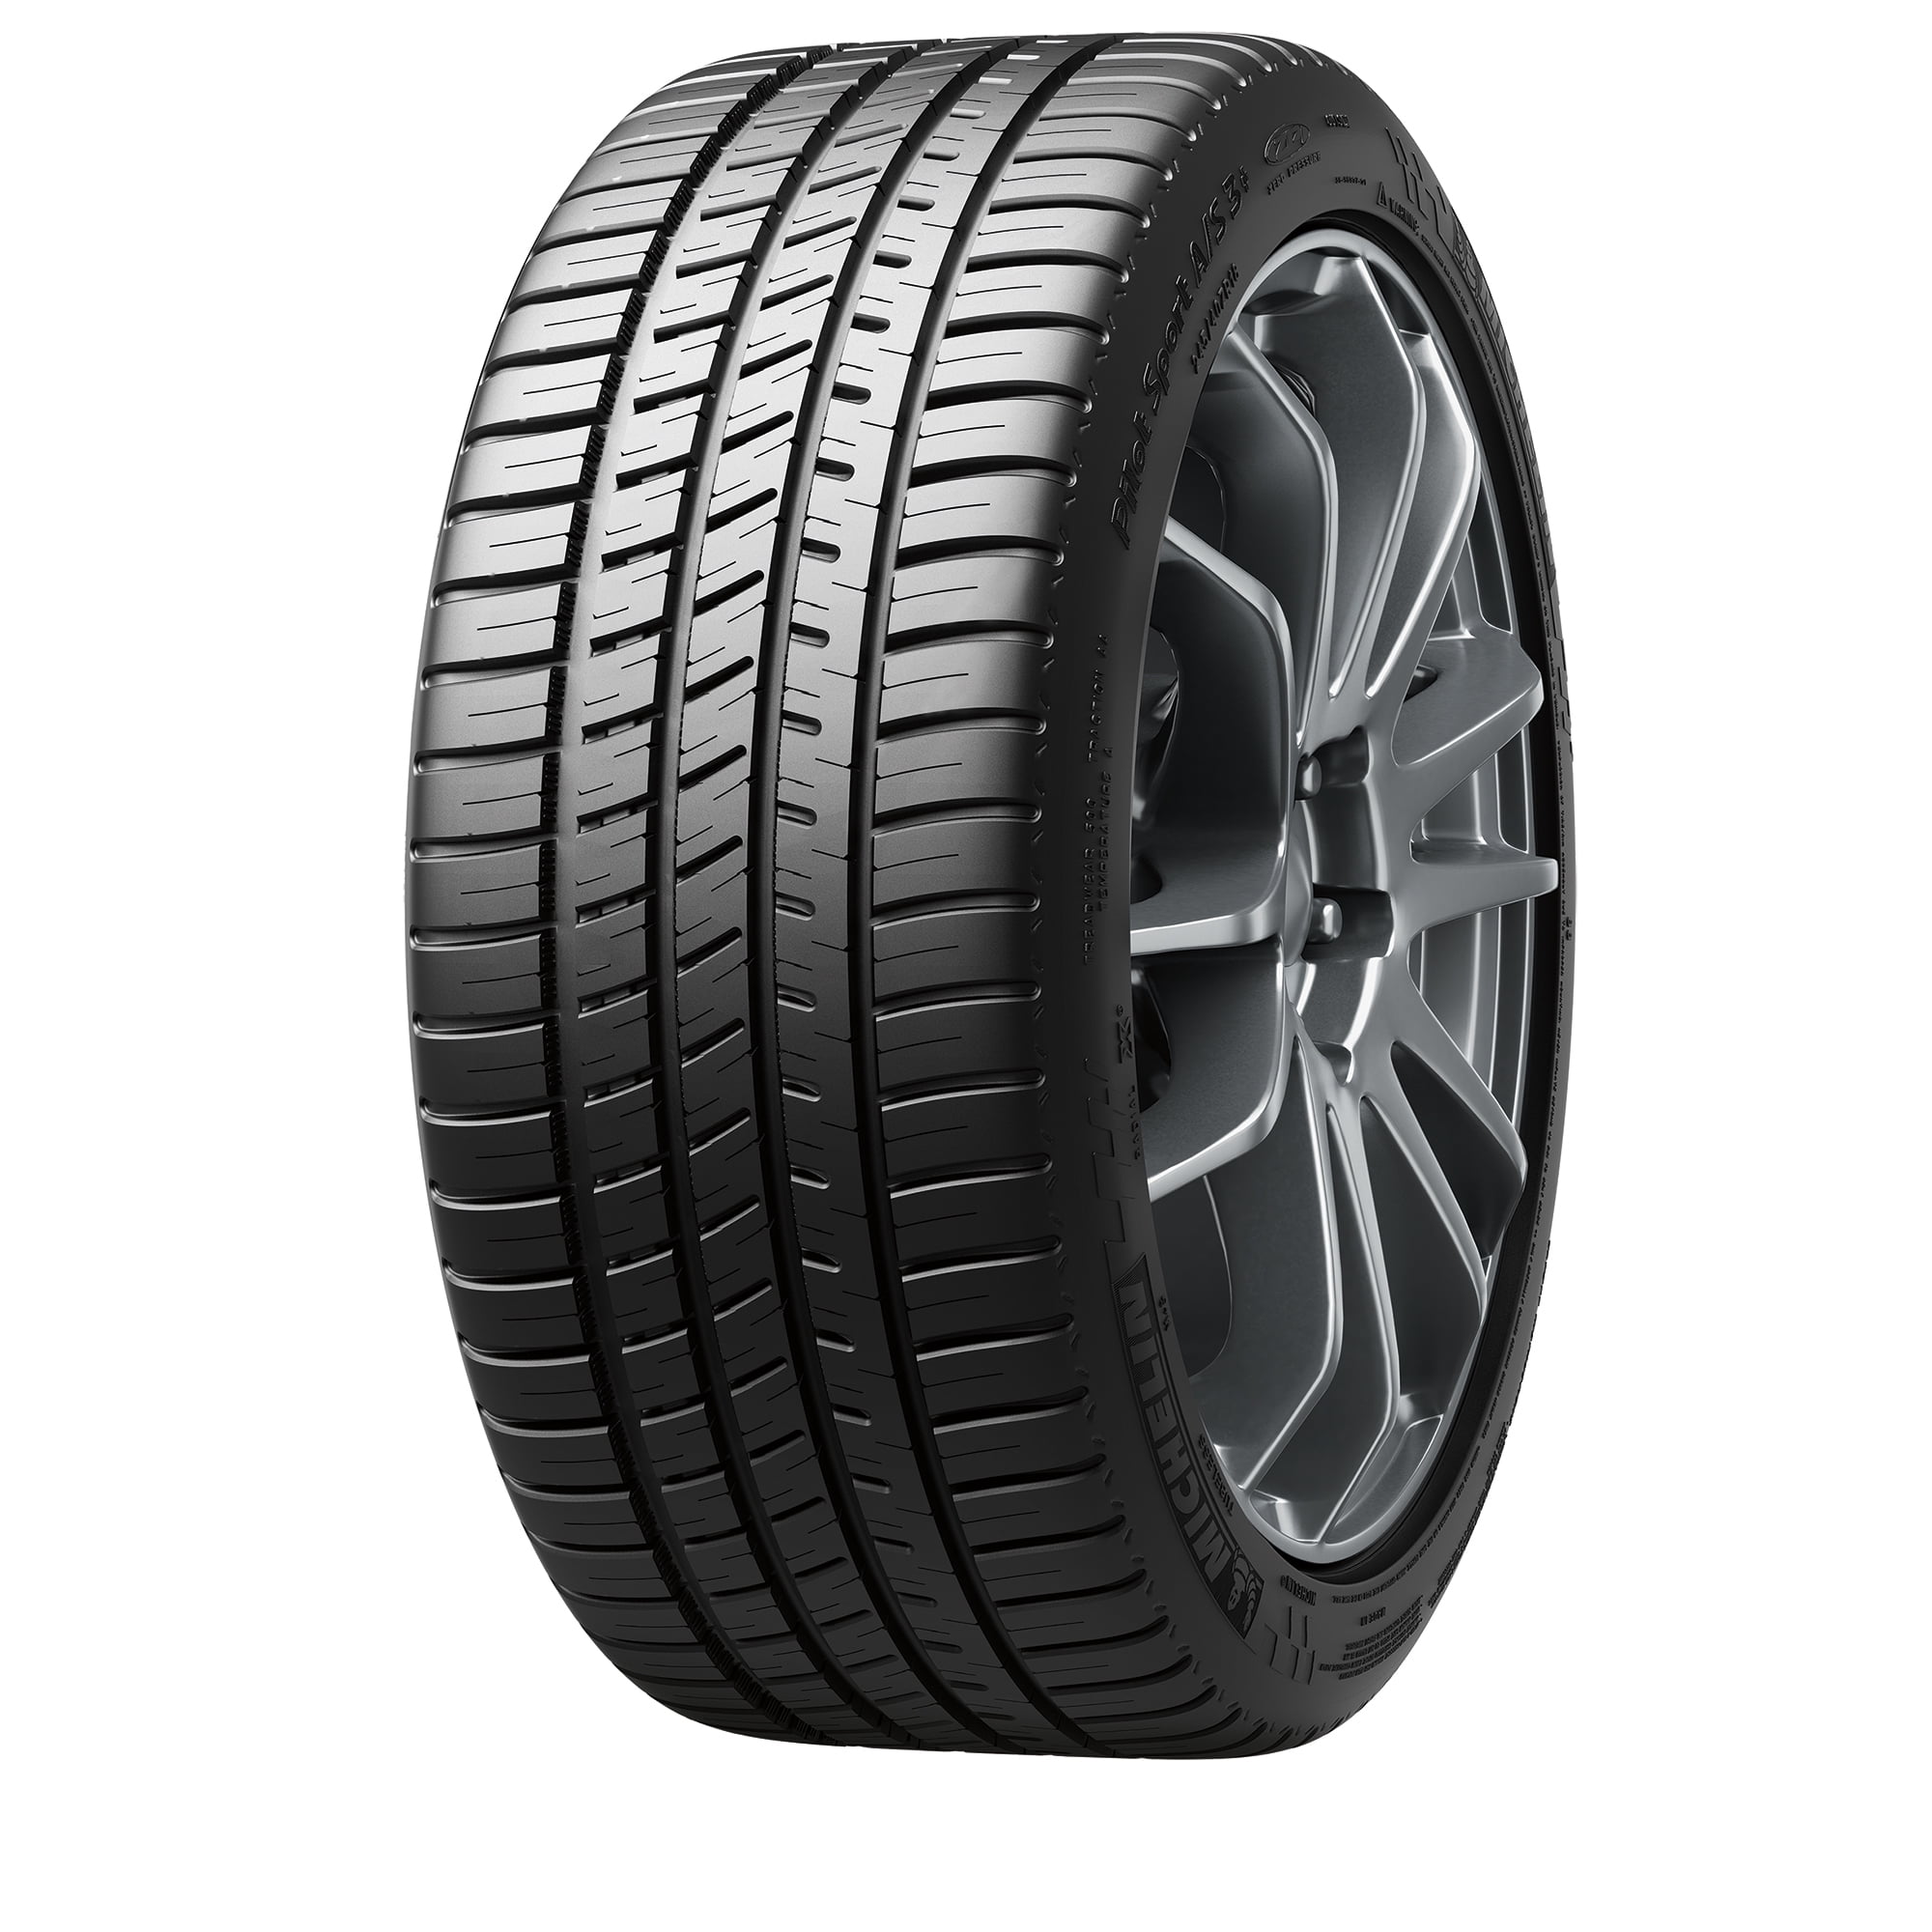 All-Season A/S Tire Pilot Michelin 3+ Sport 215/45R17 87V